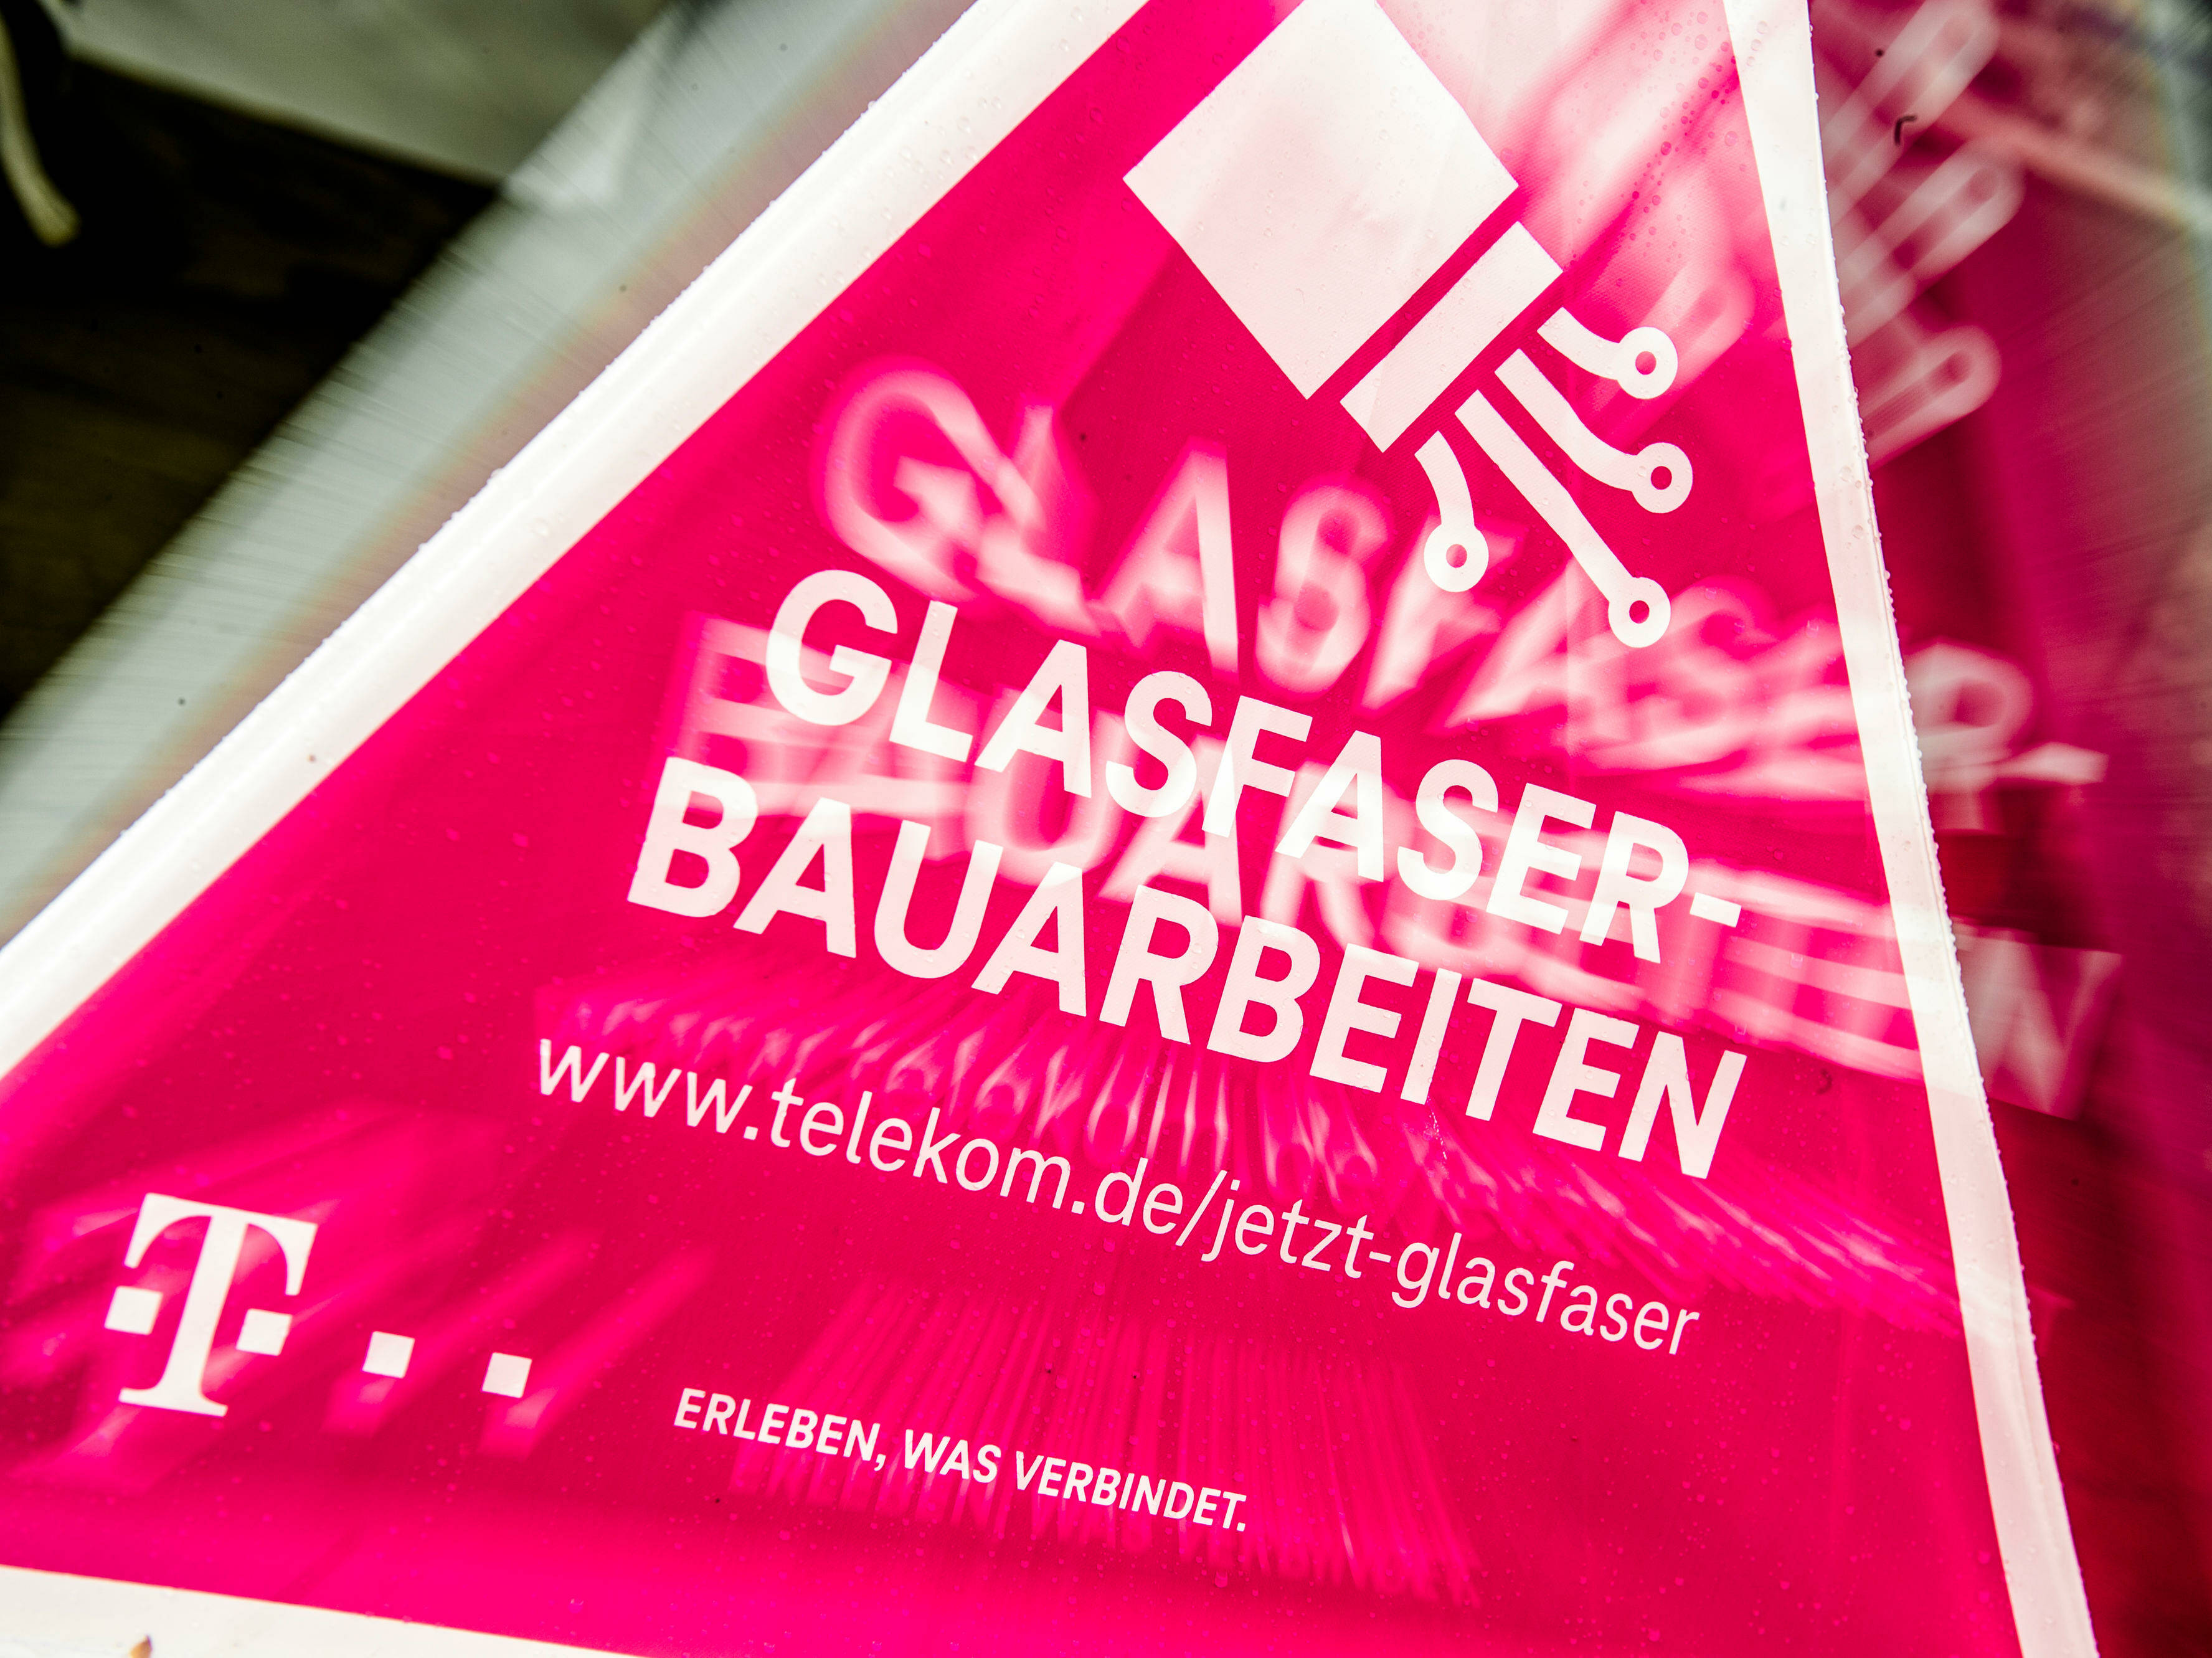 Sperrungen im Gewerbepark Heßdorf wegen Telekom Glasfaserausbau (Bauabschnitt 4) vom 15.05. - 30.06.2022